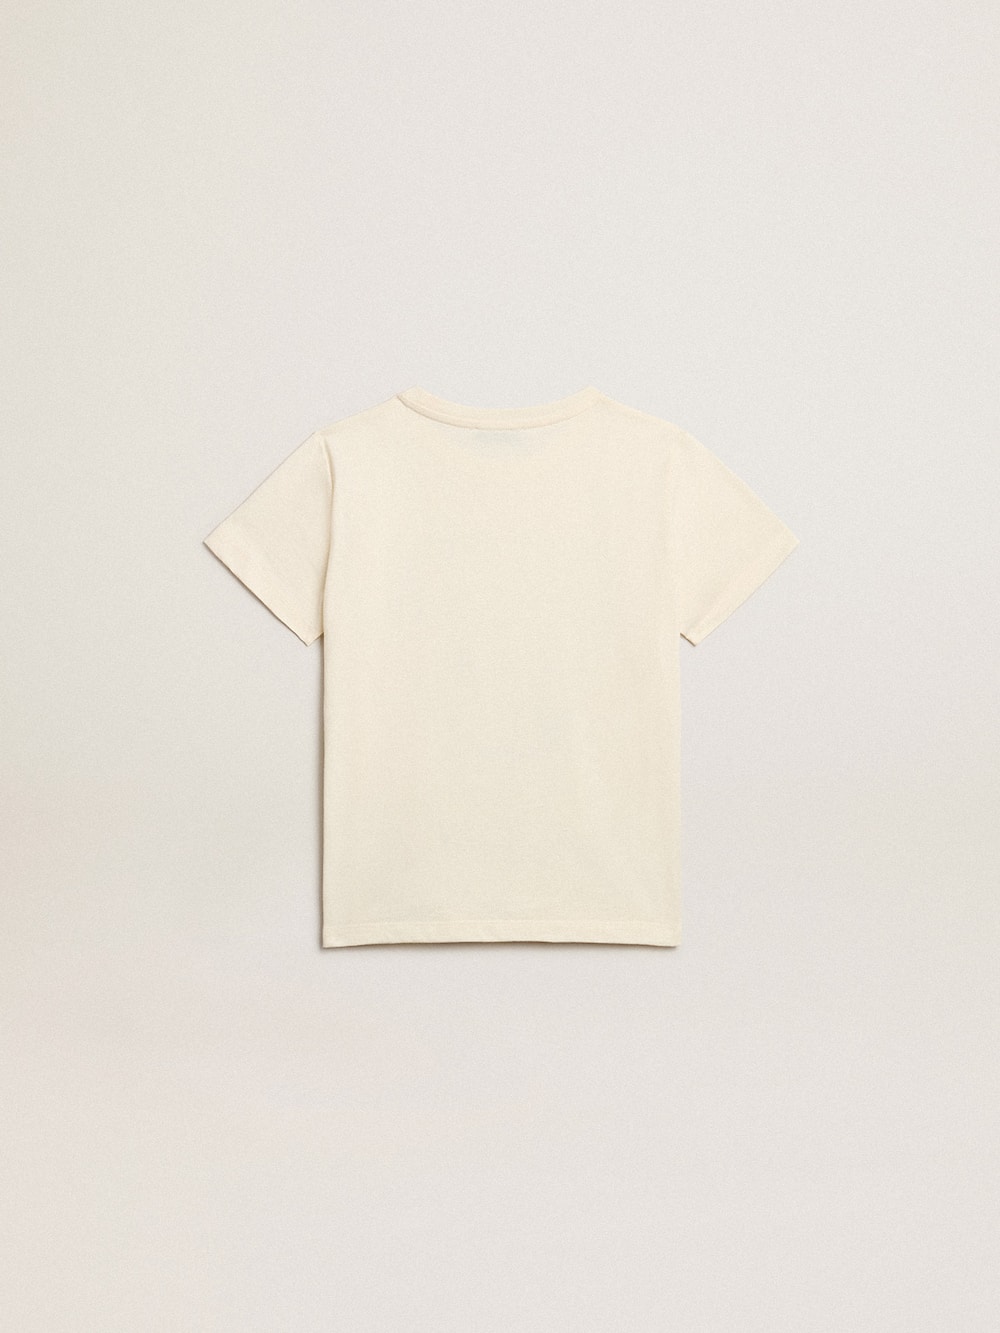 Golden Goose - Jungen-T-Shirt aus Baumwolle in Lived-in-White mit verblasstem Print in der Mitte in 